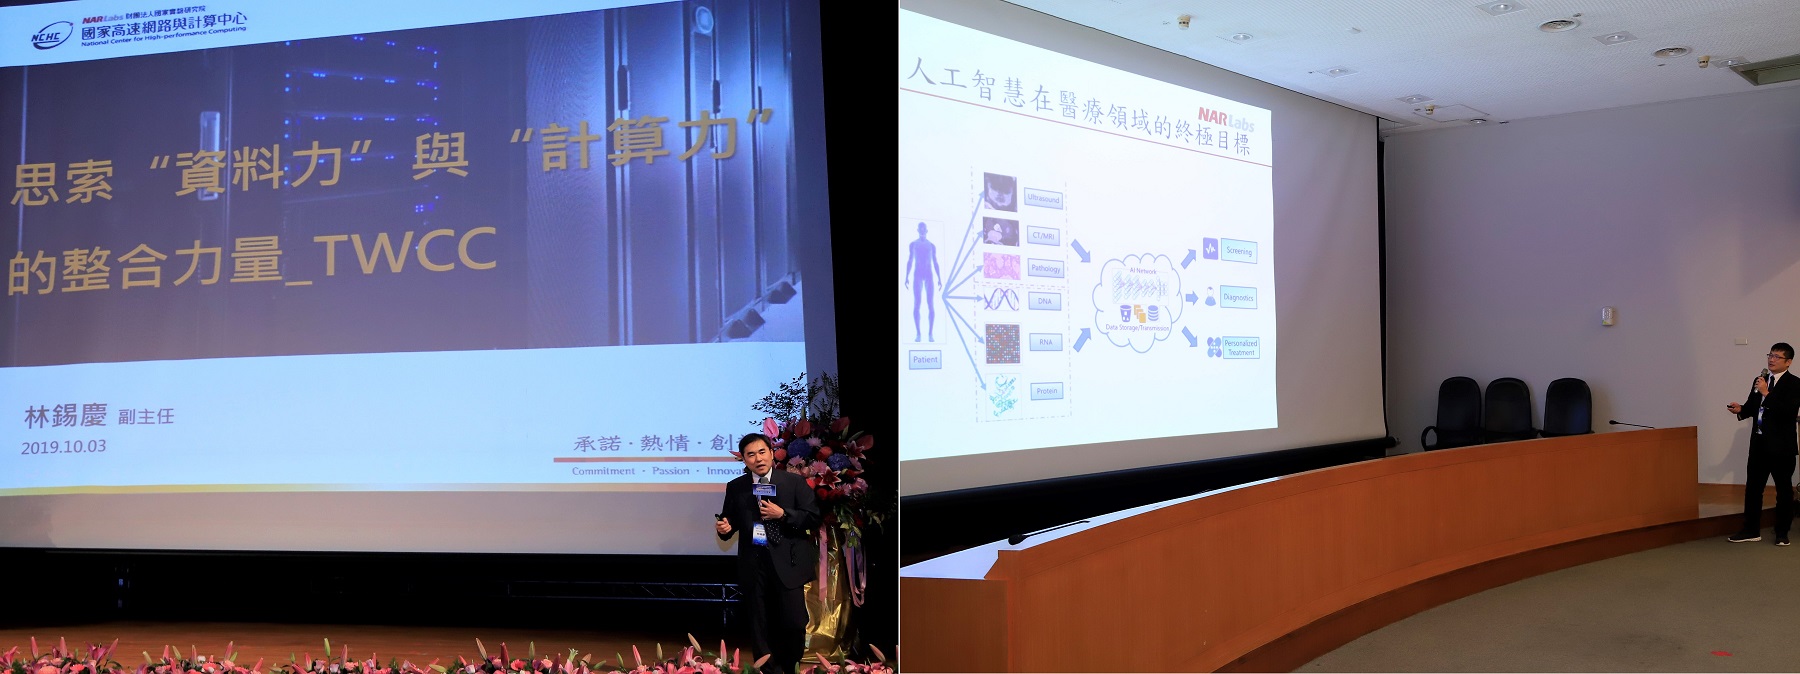 (左)林錫慶主任開場簡報  (右)王聿泰博士介紹台灣醫療AI技術現況